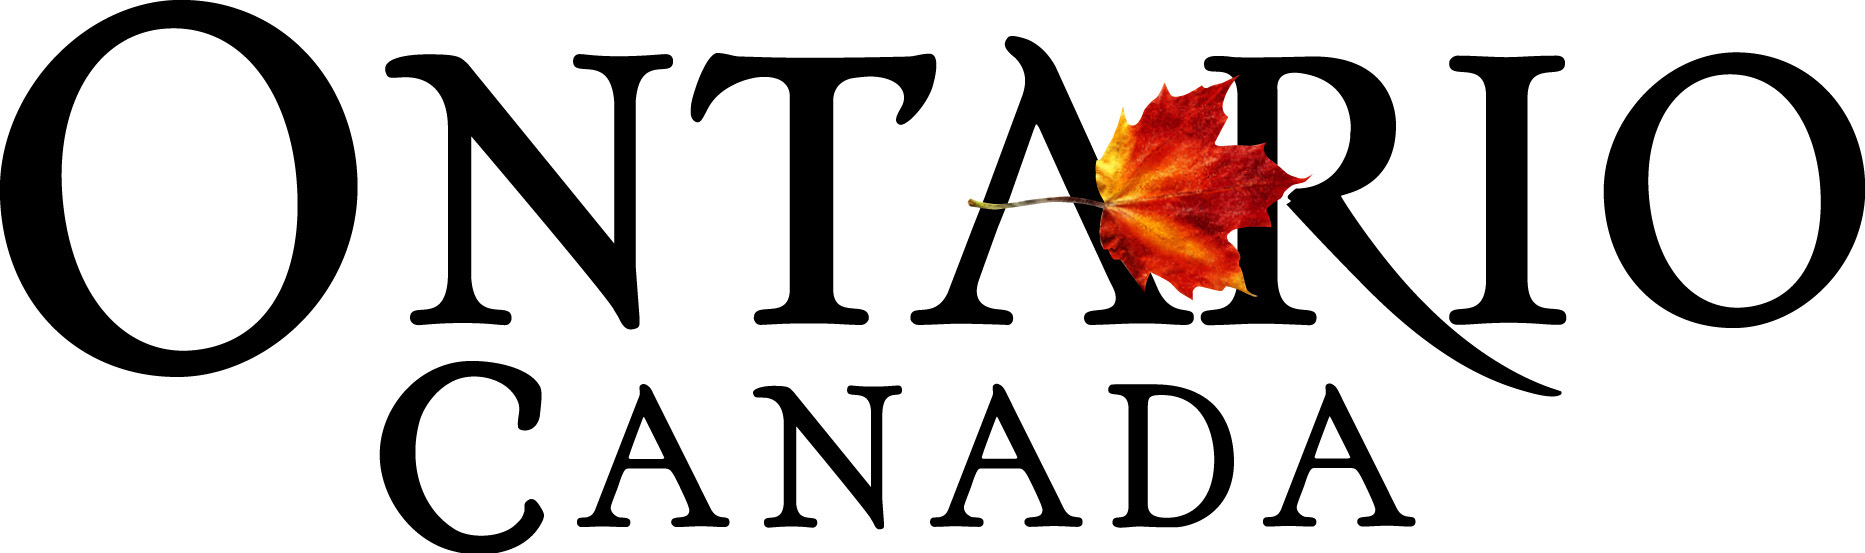 Ontario, Canada logo